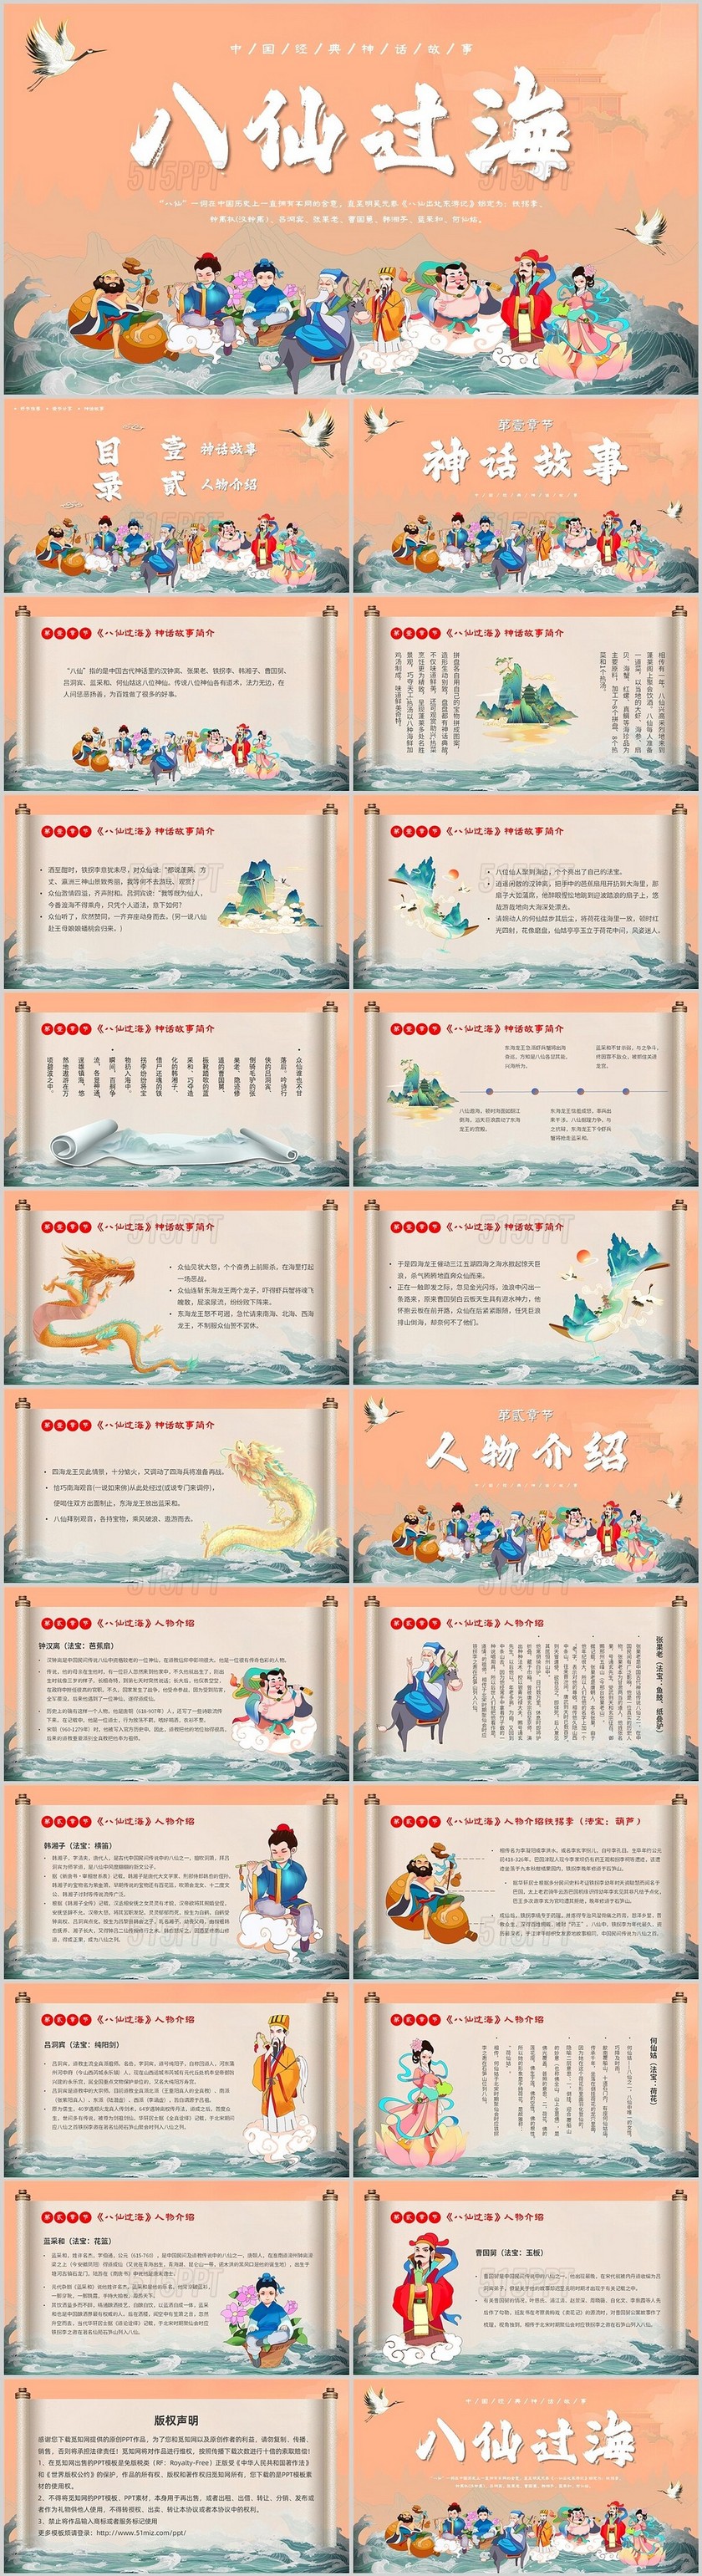 黄色简约插画中国神话故事八仙过海主题PPT模板